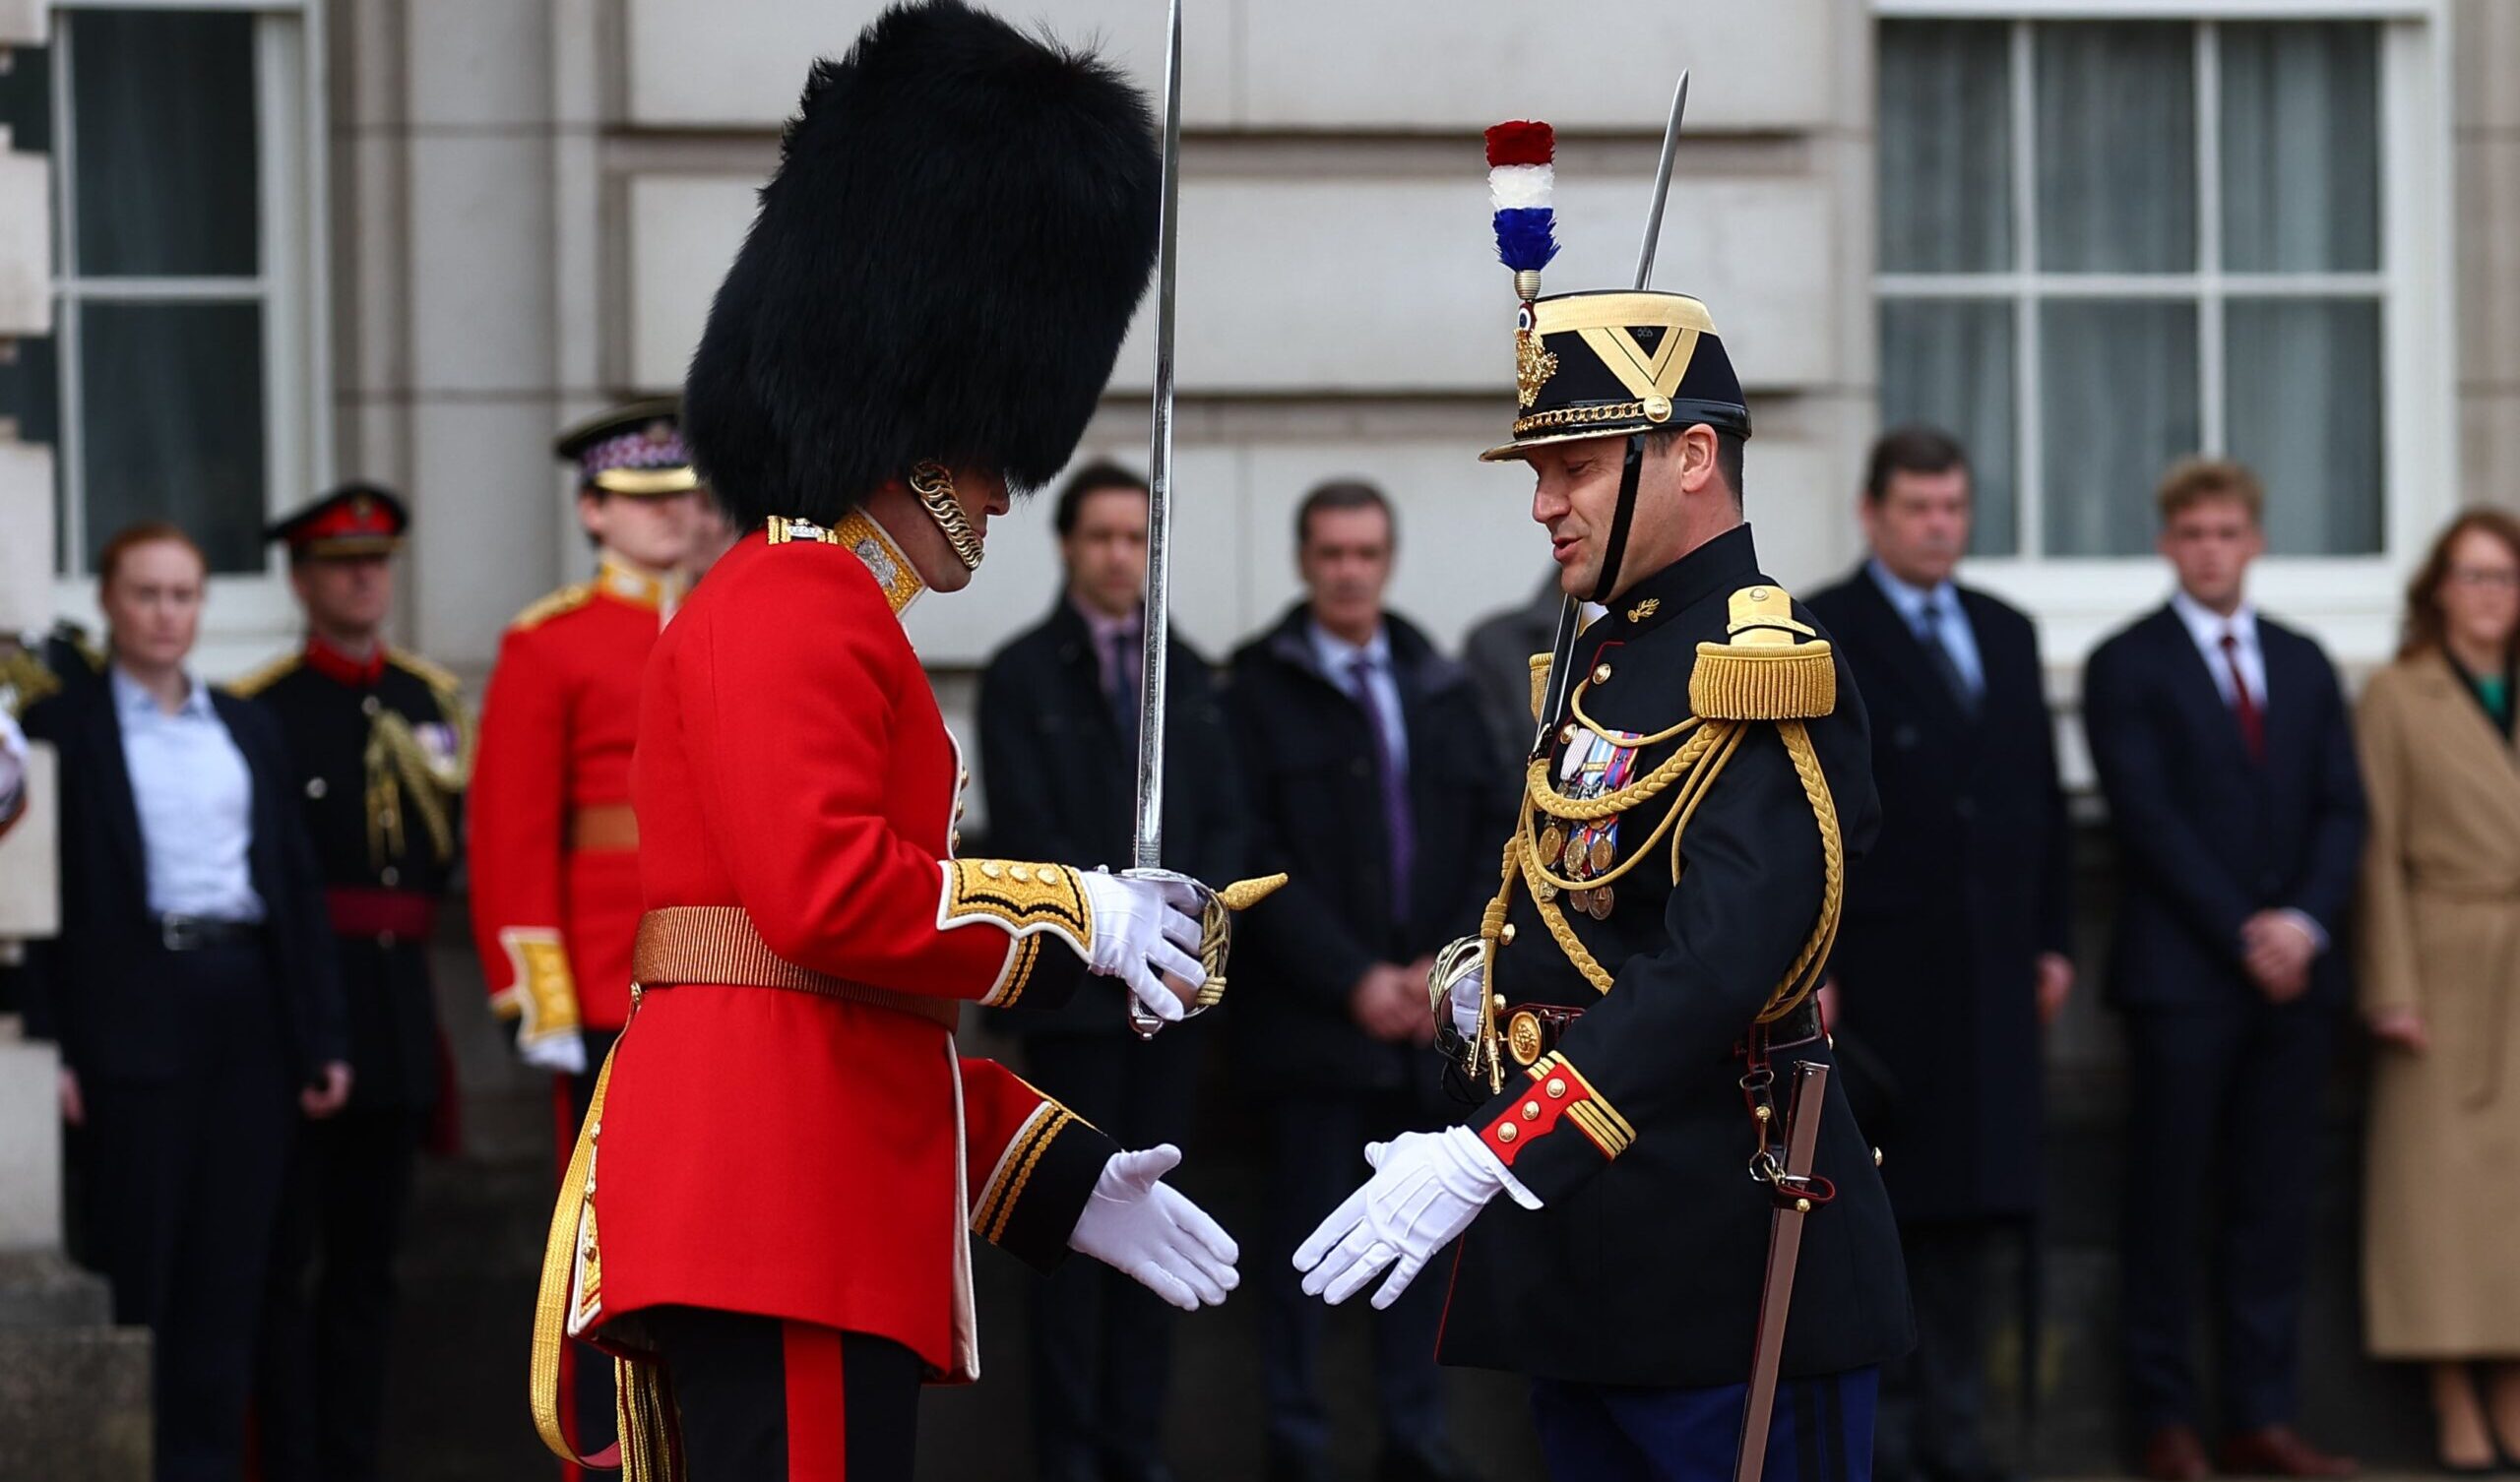 Soldati francesi al cambio della guardia a Buckingham Palace: la prima volta per un paese no-Commonwealth